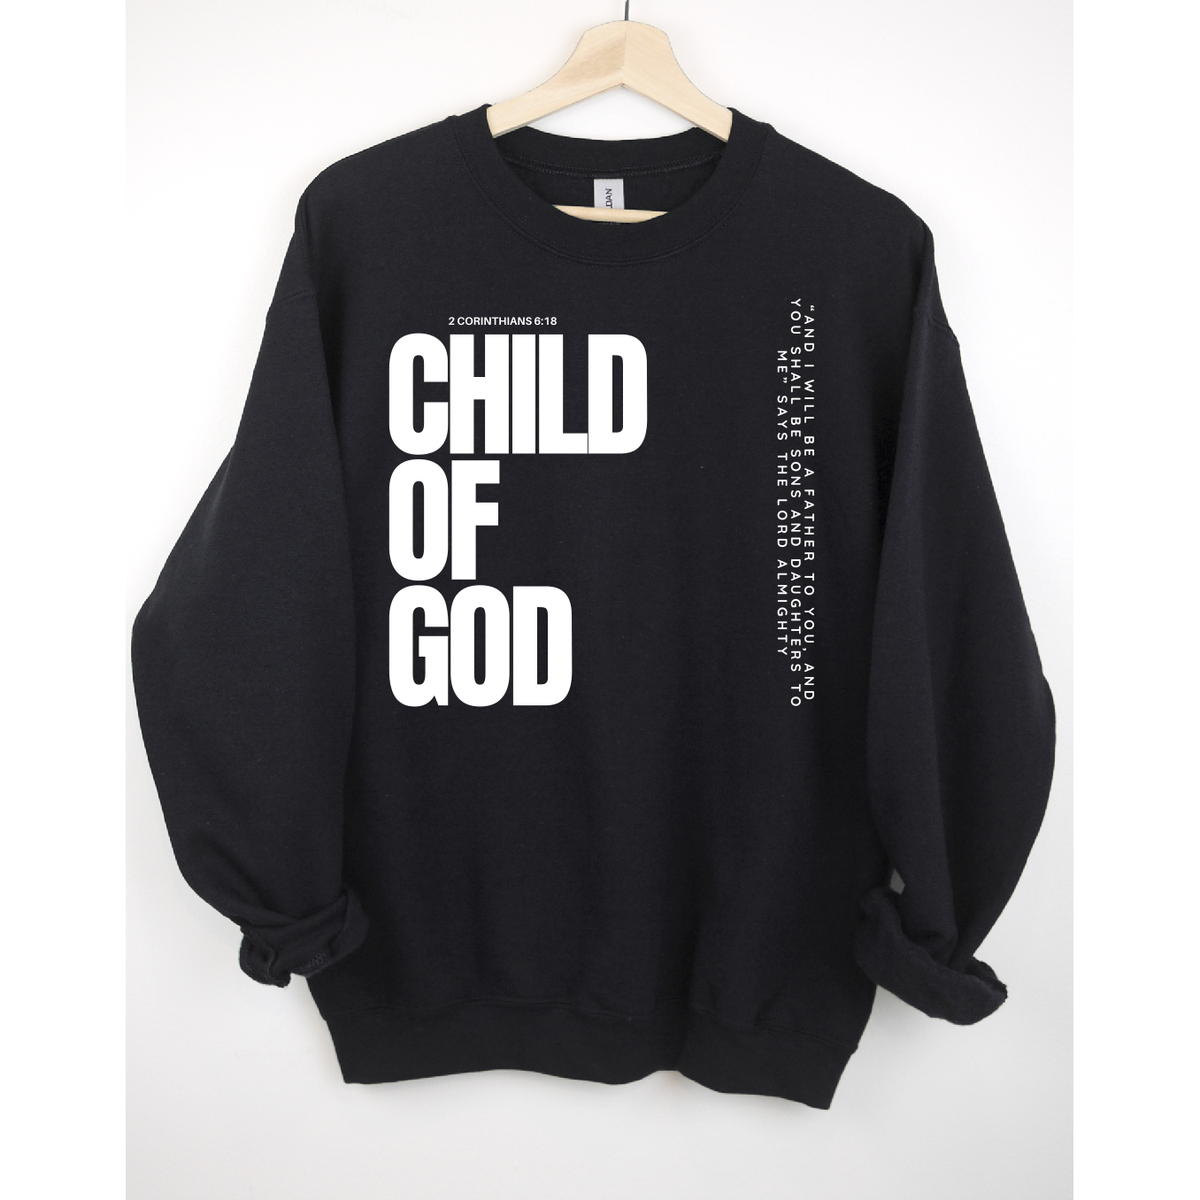 Child of God Christian tee or sweatshirt